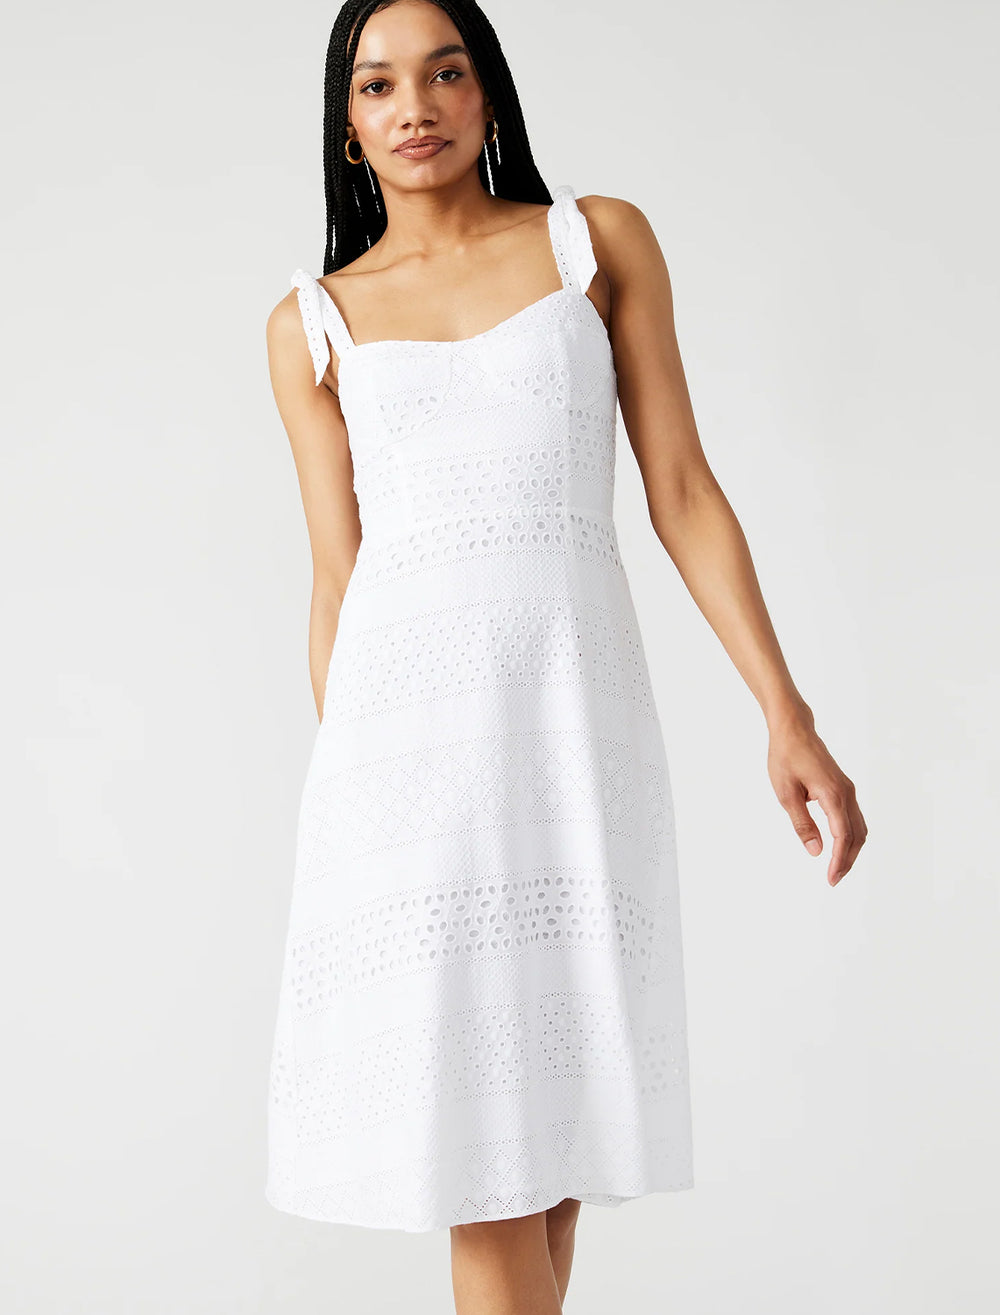 Model wearing Steve Madden's carlynn dress in white.